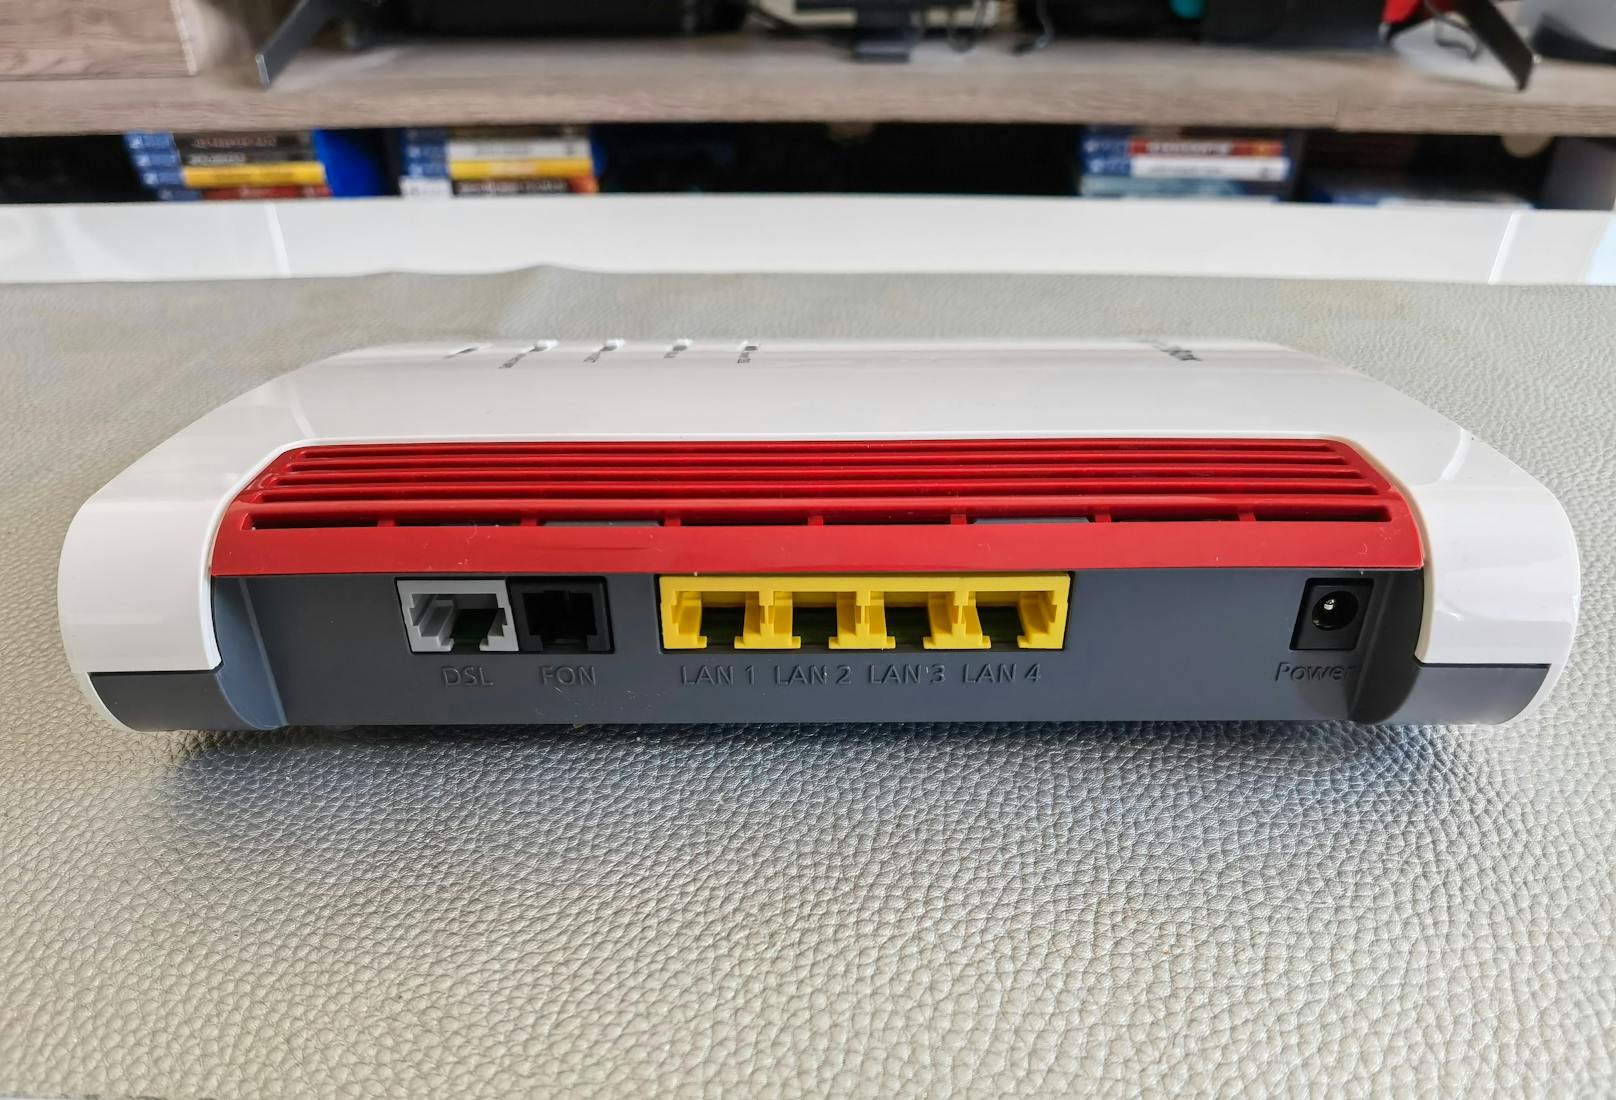 Als Anschlüsse stehen an der neuen Fritz!Box vier Gigabit-LAN-Anschlüsse und ein USB-2.0-Anschluss bereit.